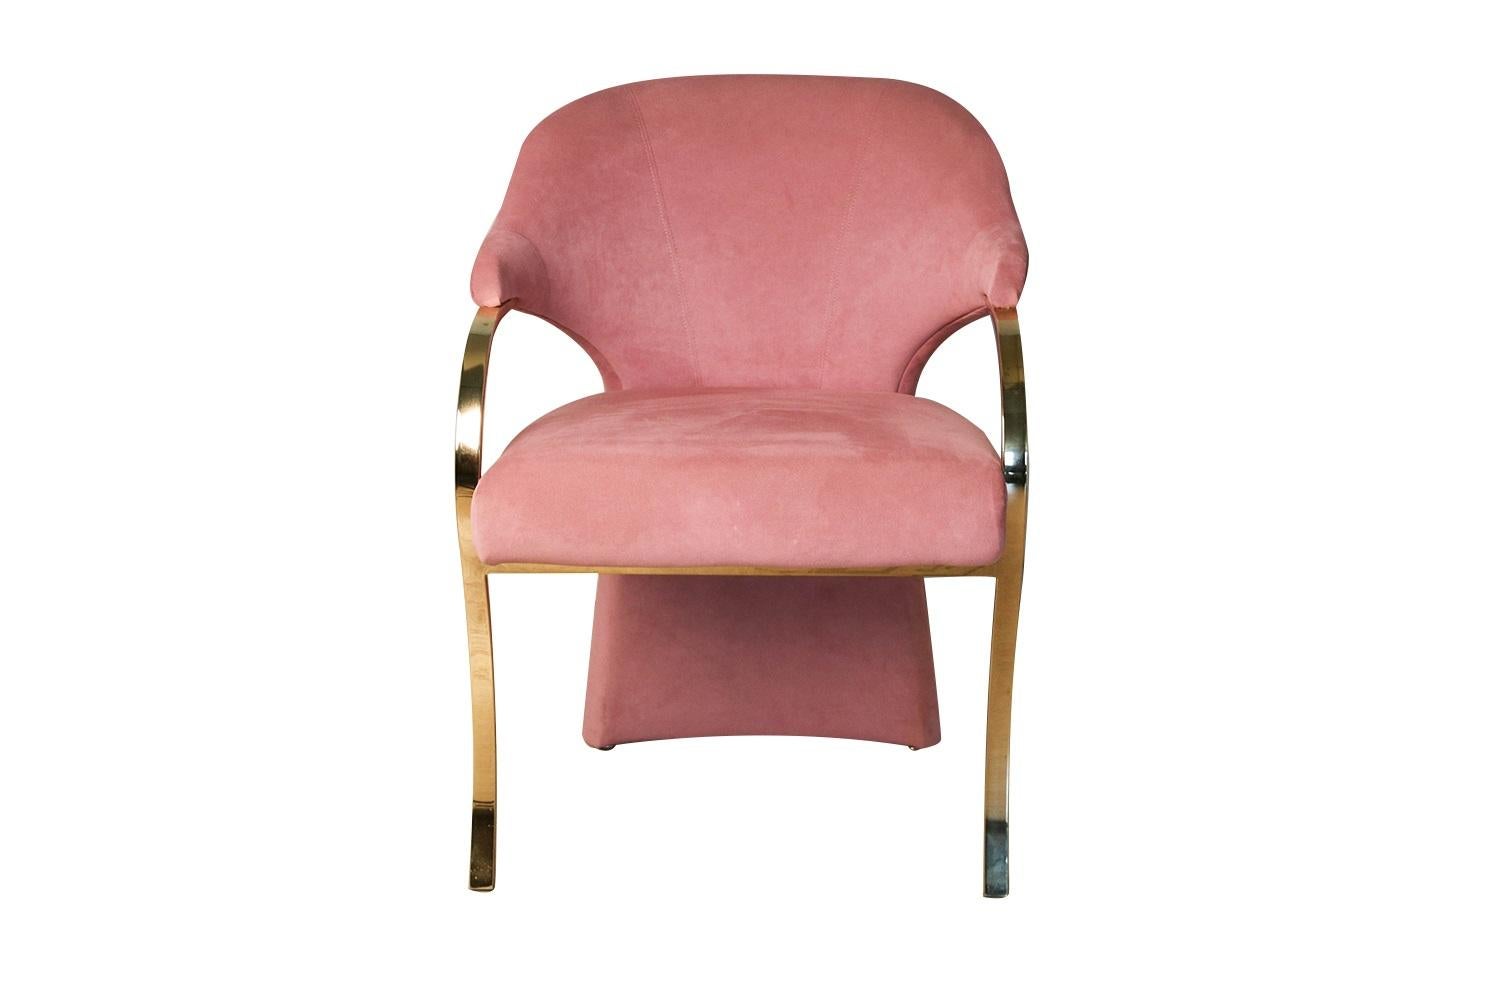 Gepolsterter Hollywood-Regency-Sessel von Carson in großartiger, moderner Form mit freitragendem Messinggestell und tonnenförmiger Rückenlehne. Detailliertes, erhöhtes, weich gepolstertes Sitzkissen in originaler, üppiger Rosenpolsterung und ein